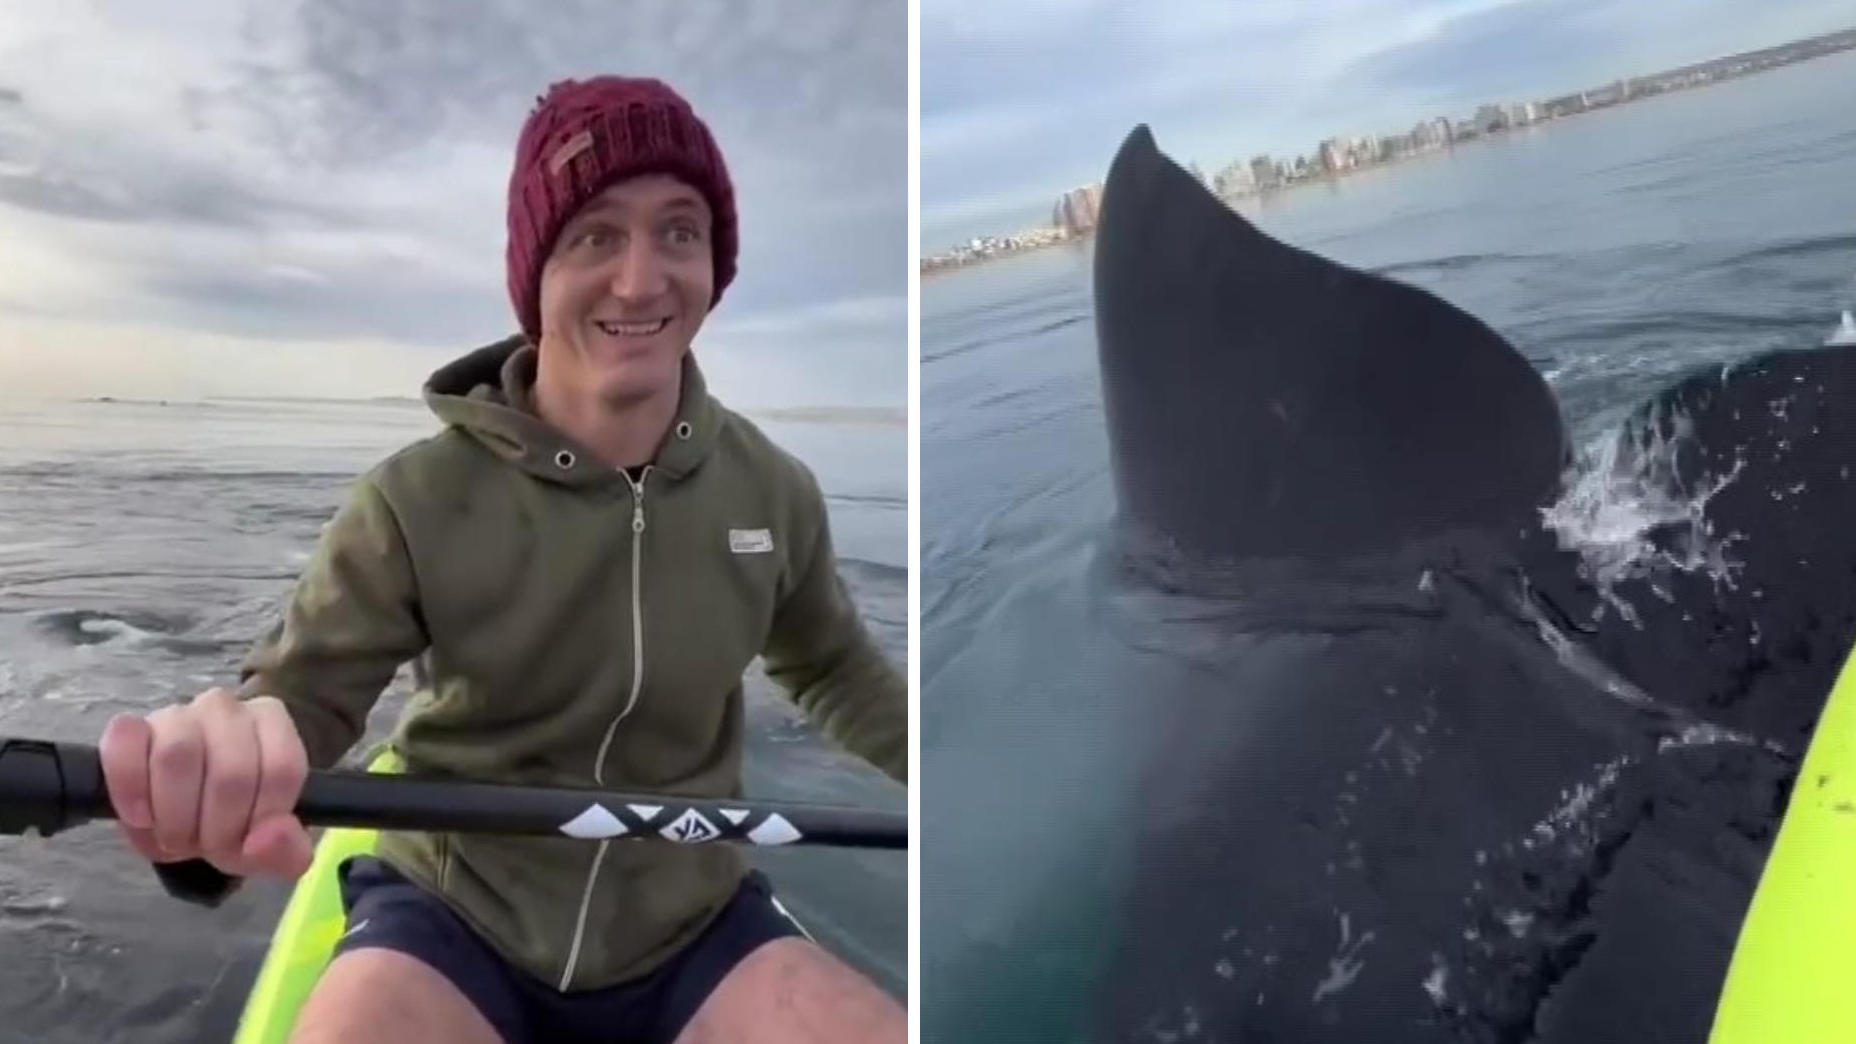 Drei Riesenwale überraschen Paar auf offenem Meer Flosse und Kajak berühren sich!